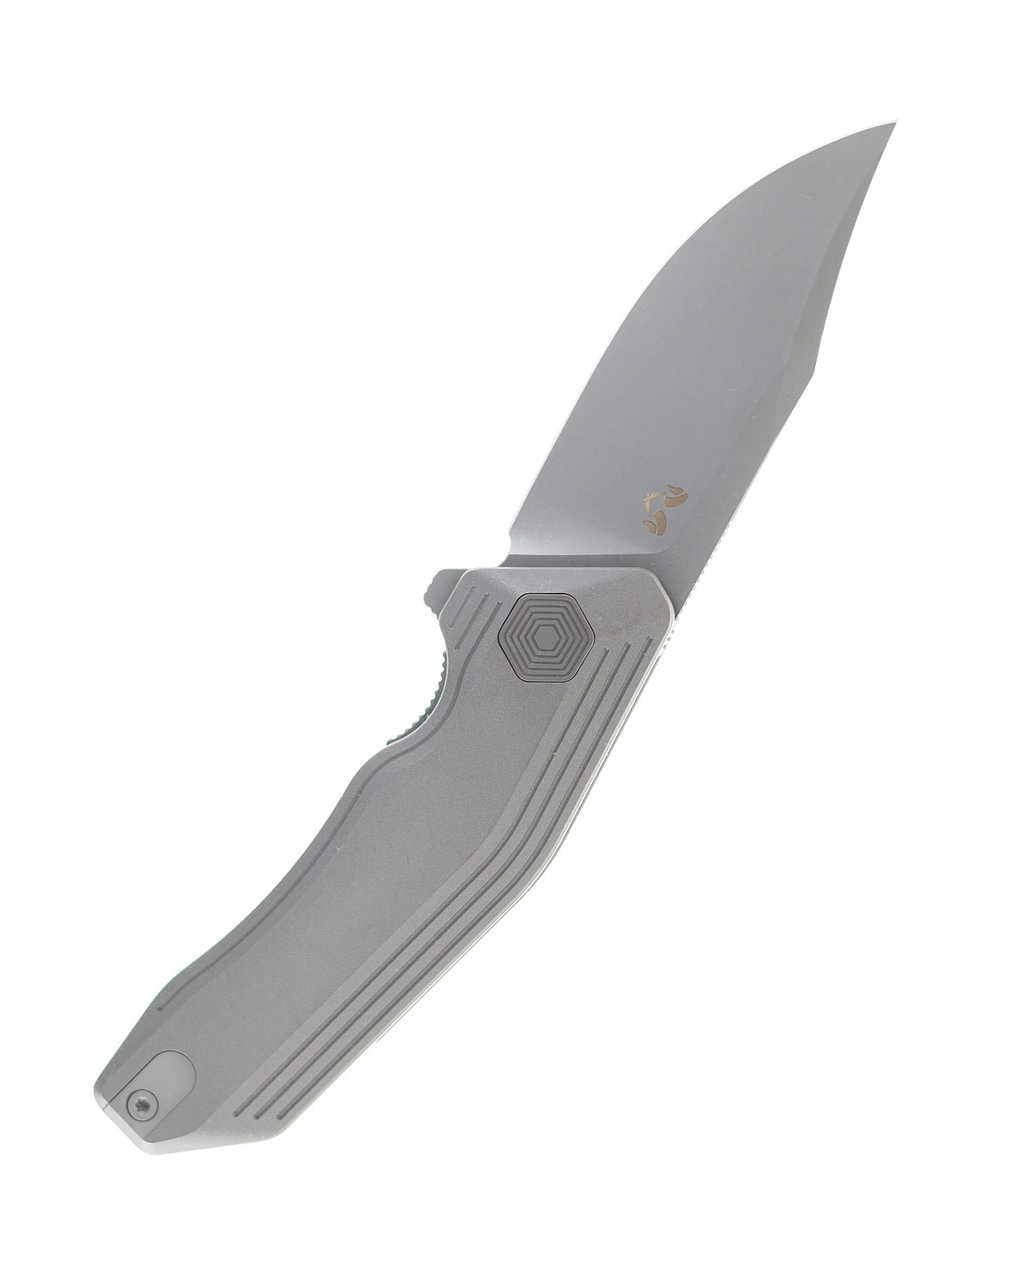 product image for Damned Designs Cerberus Folding Knife Stonewash Finish